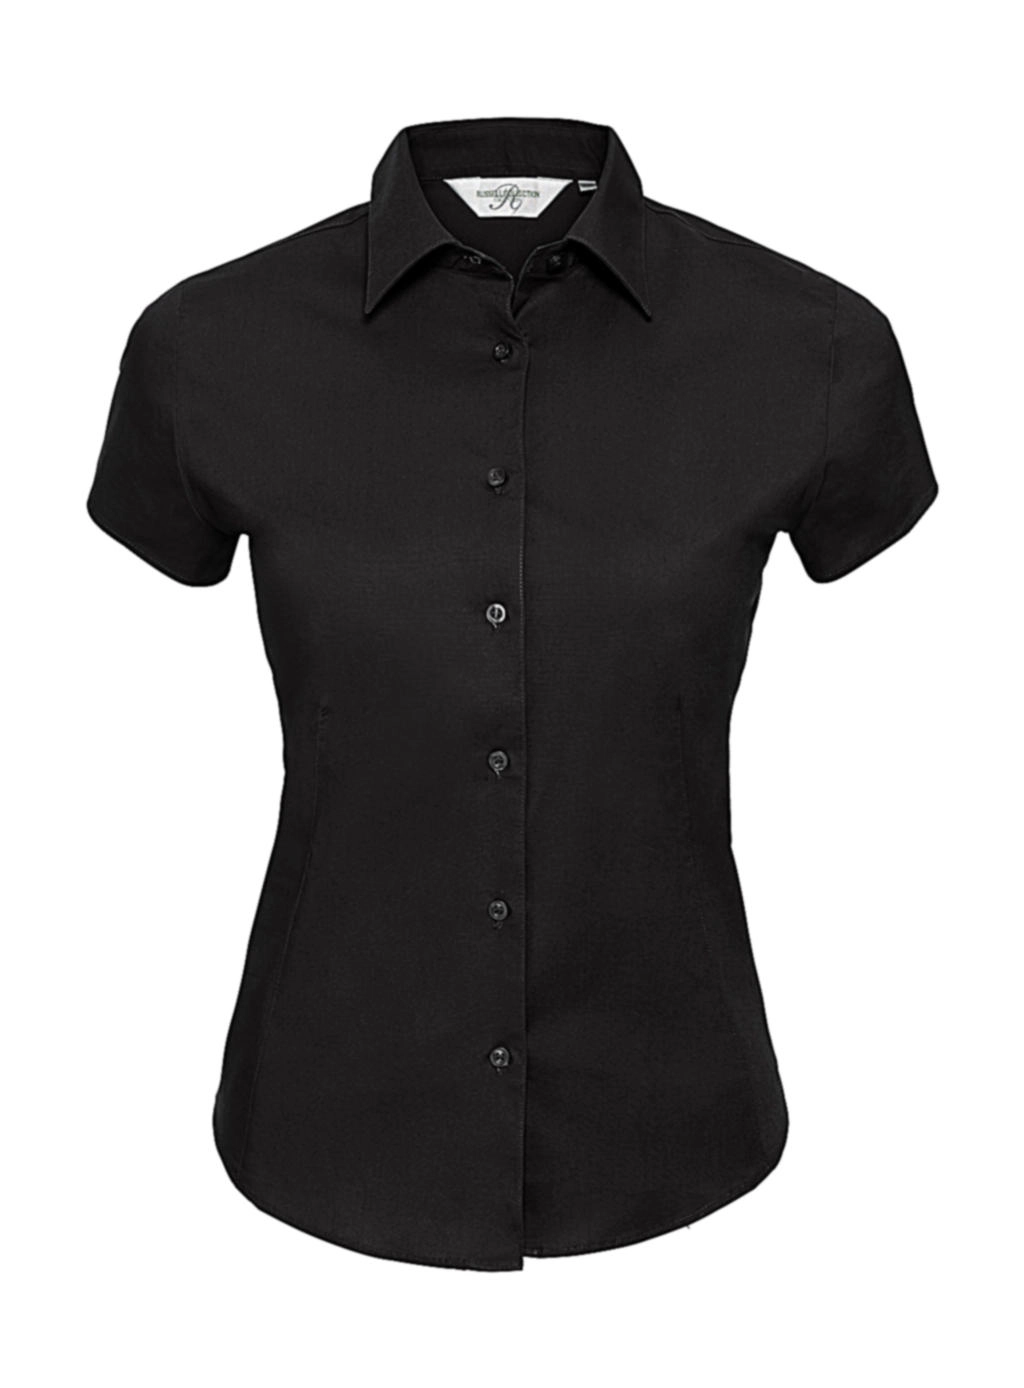 Ladies` Easy Care Fitted Shirt zum Besticken und Bedrucken in der Farbe Black mit Ihren Logo, Schriftzug oder Motiv.